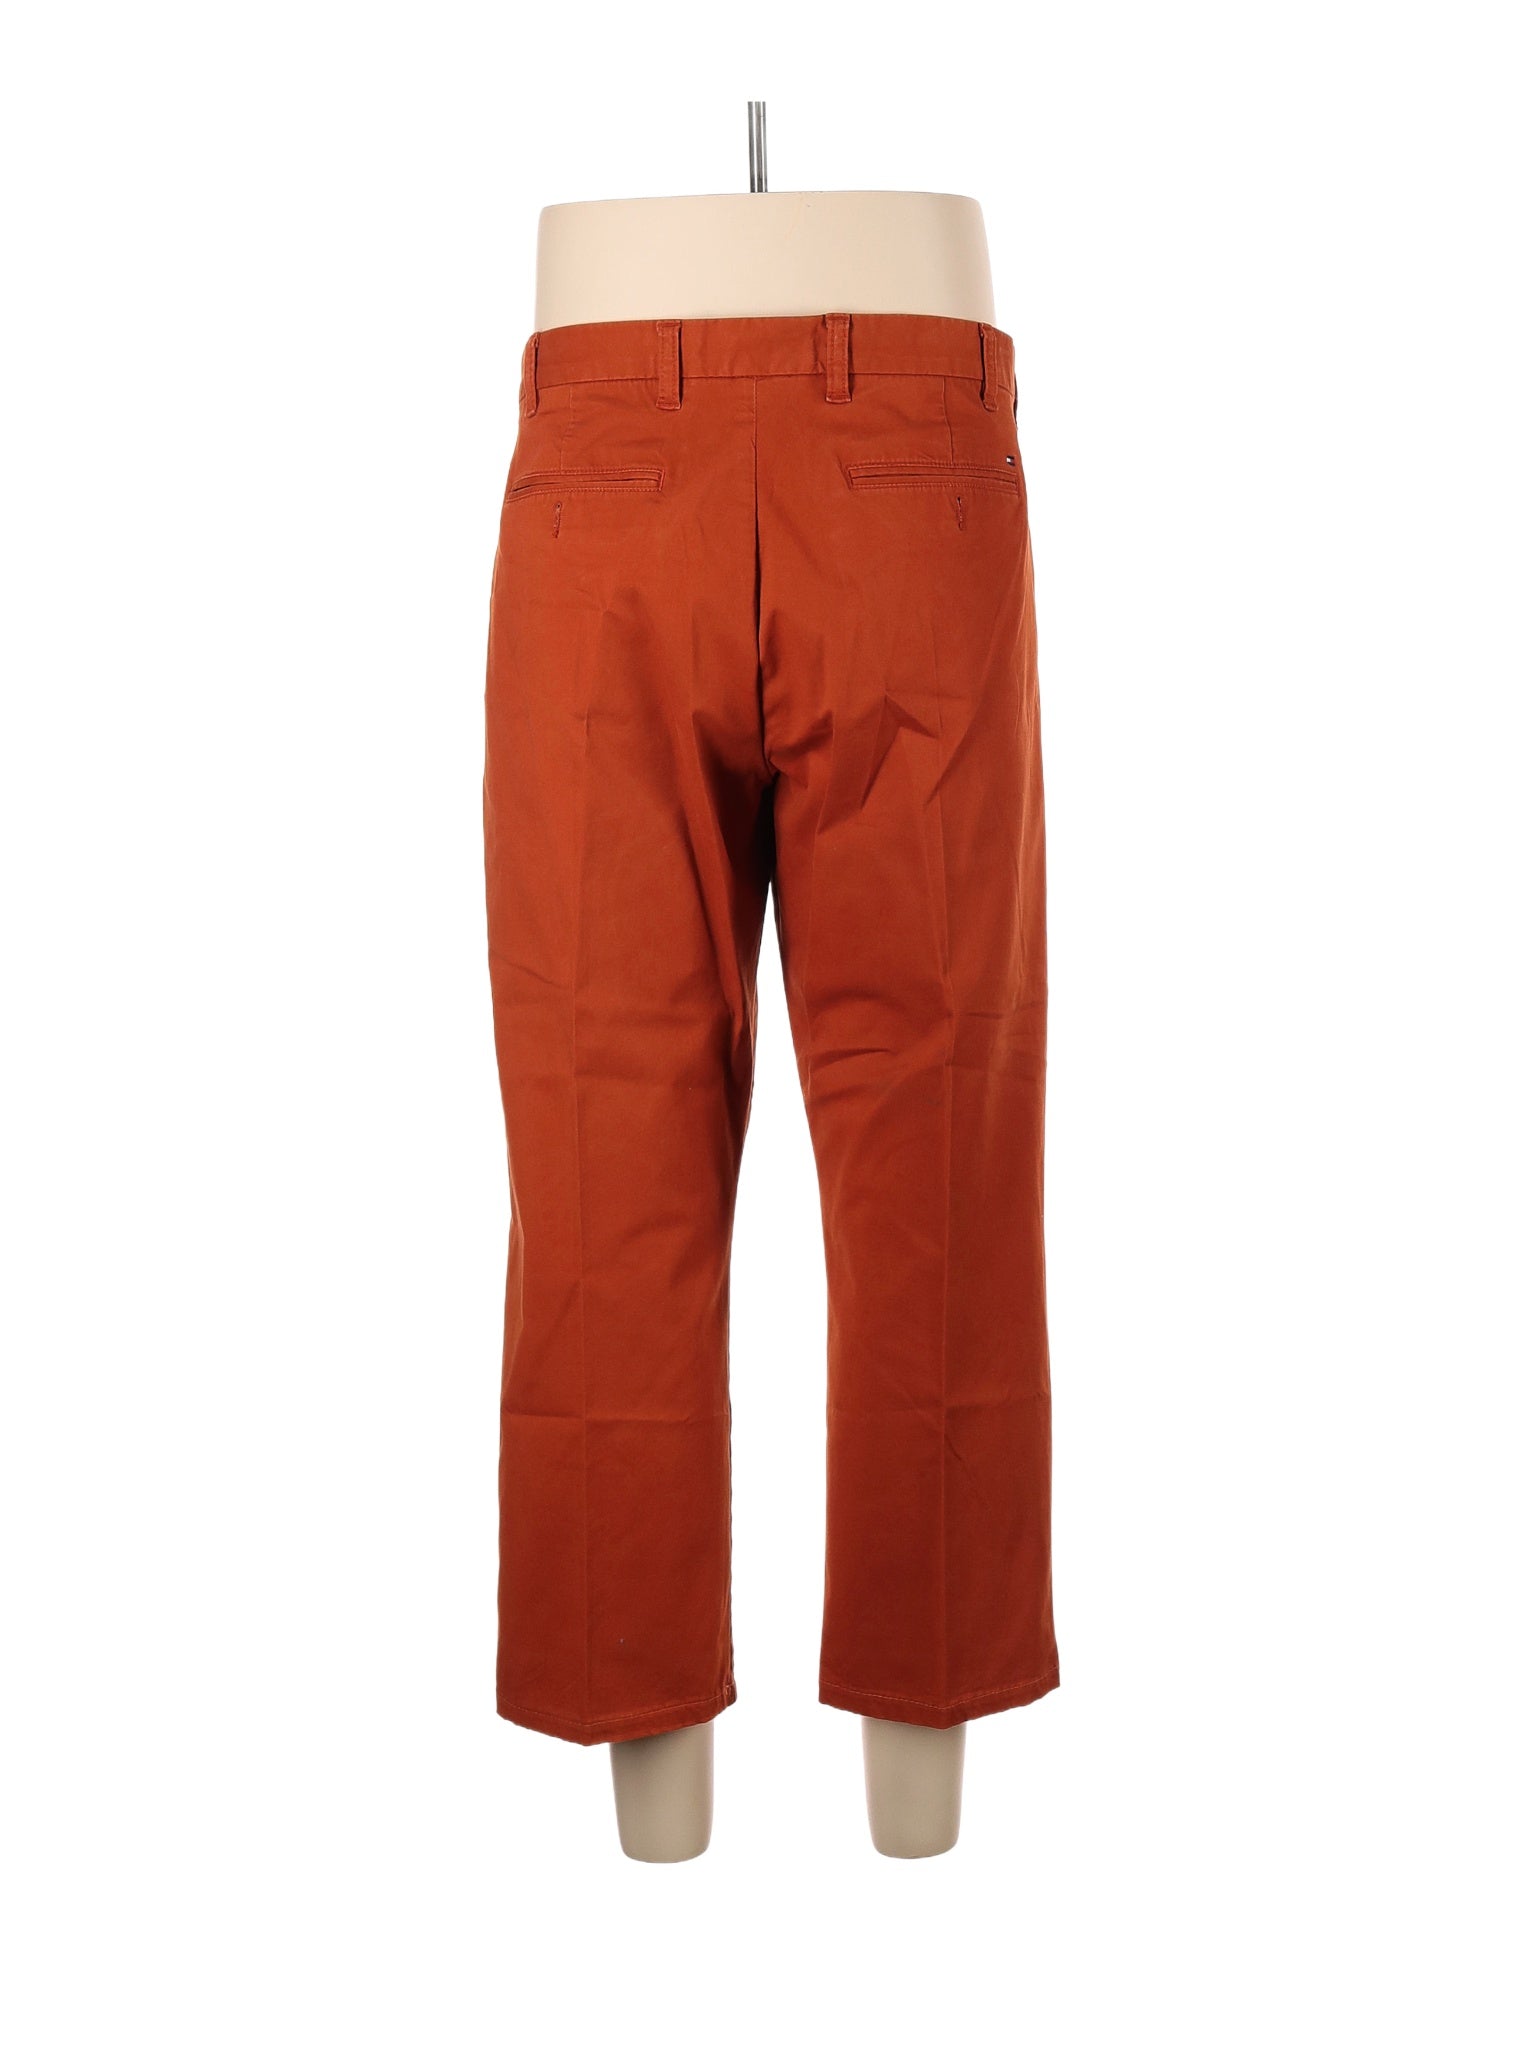 Khaki/Chino Pants size - 38 (W38 L32)